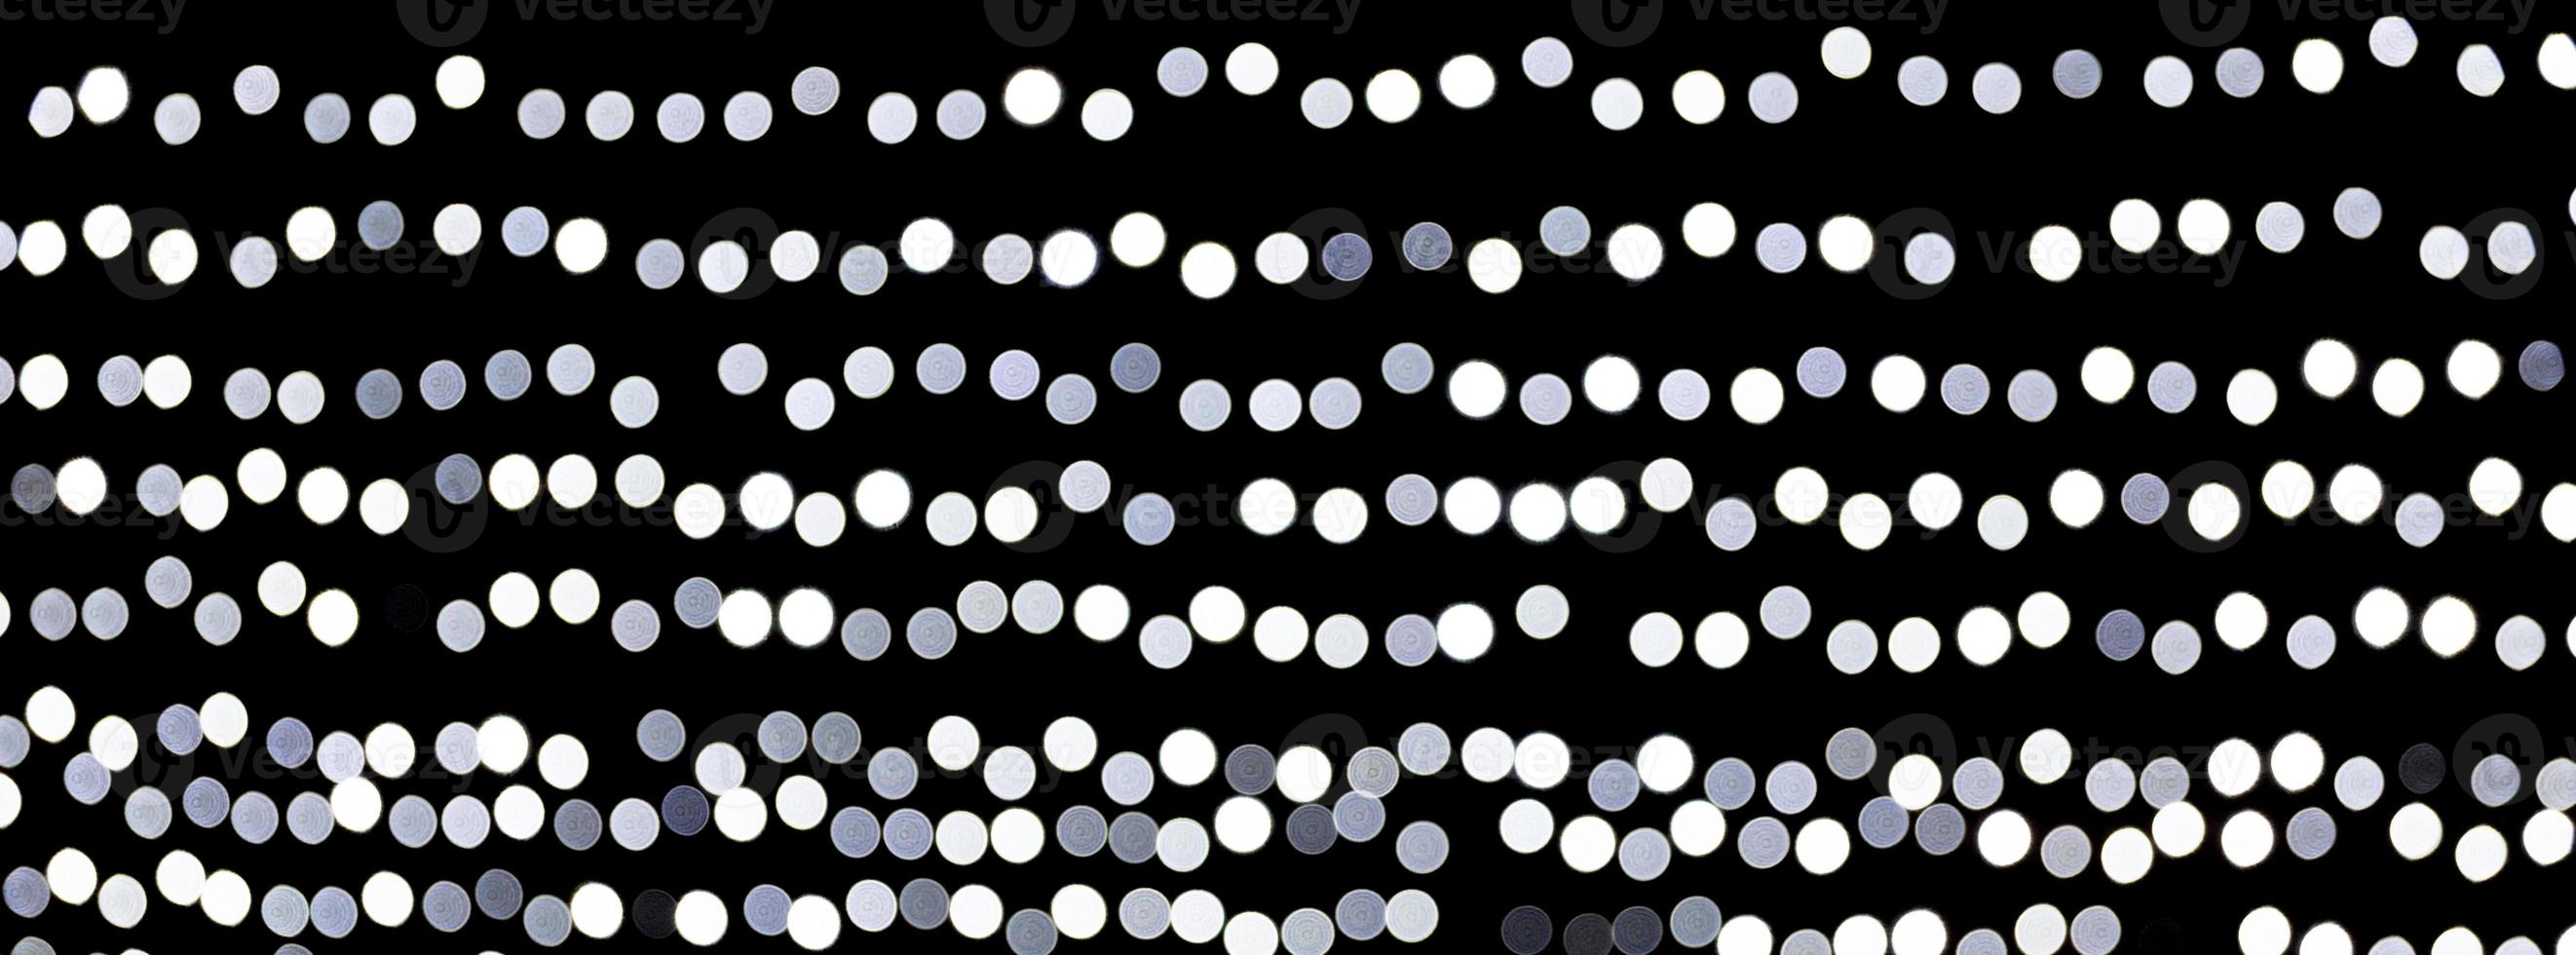 abstraktes bokeh der weißen stadtlichter auf schwarzem hintergrund. defokussiert und verschwommen viele runde licht foto